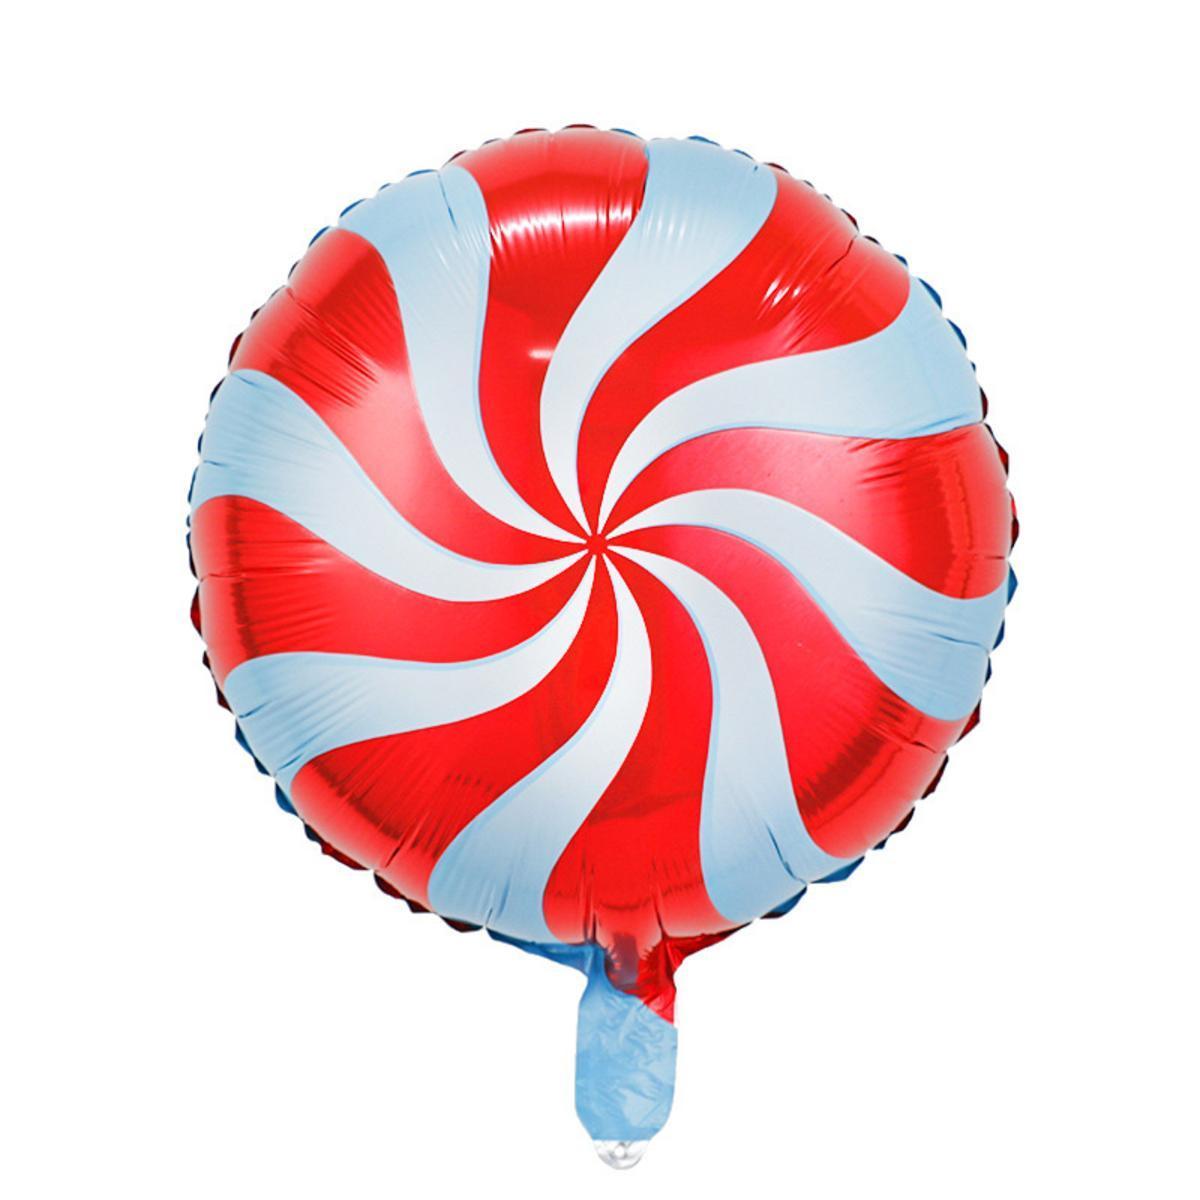 Ballon sucette - ø 45 cm - Rouge et blanc - FAIRY STARS